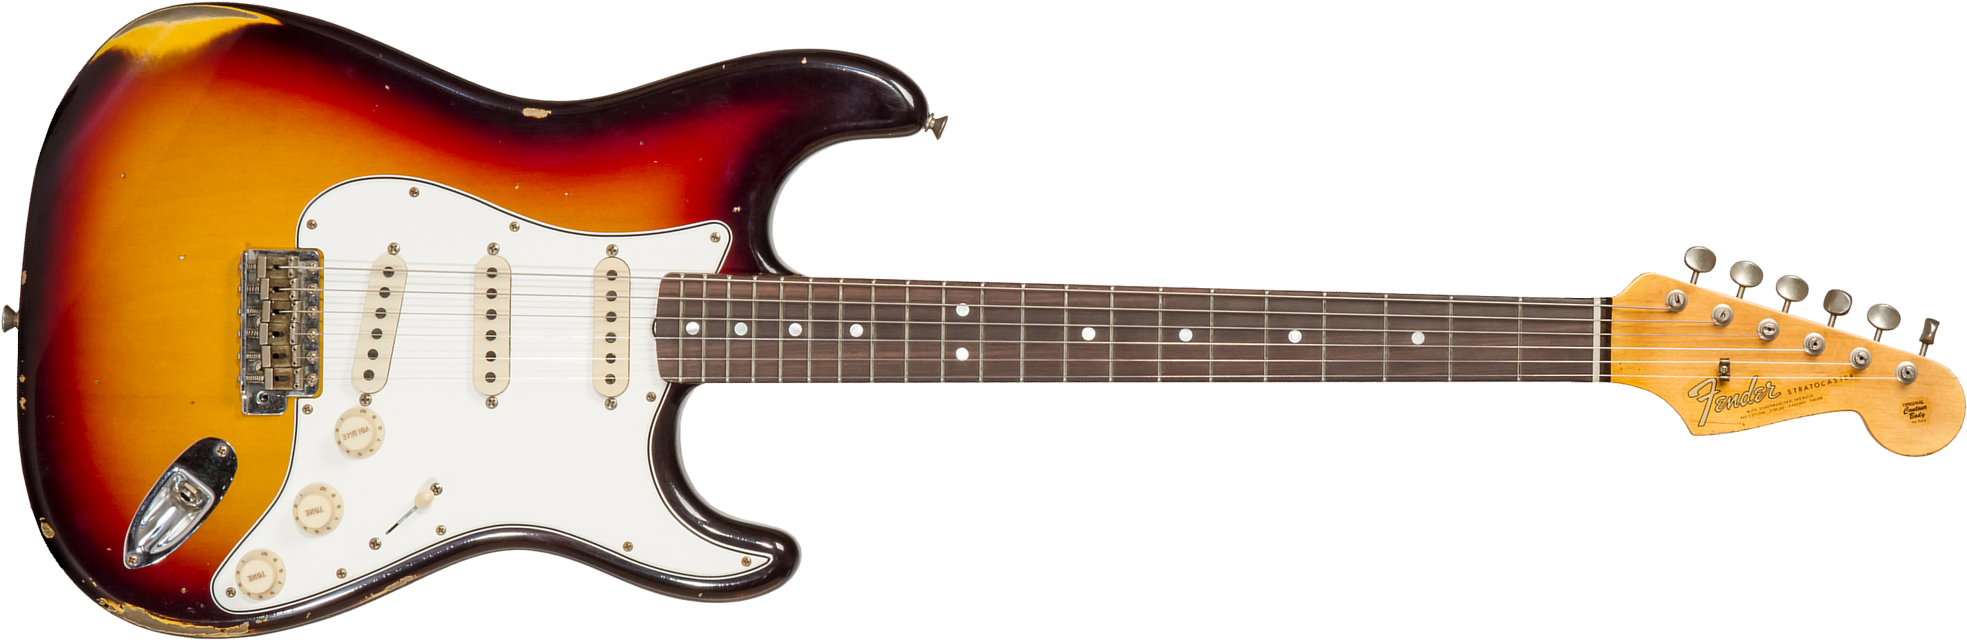 Fender Custom Shop Strat Late 1964 3s Trem Rw #cz569756 - Relic Target 3-color Sunburst - Guitare Électrique Forme Str - Main picture